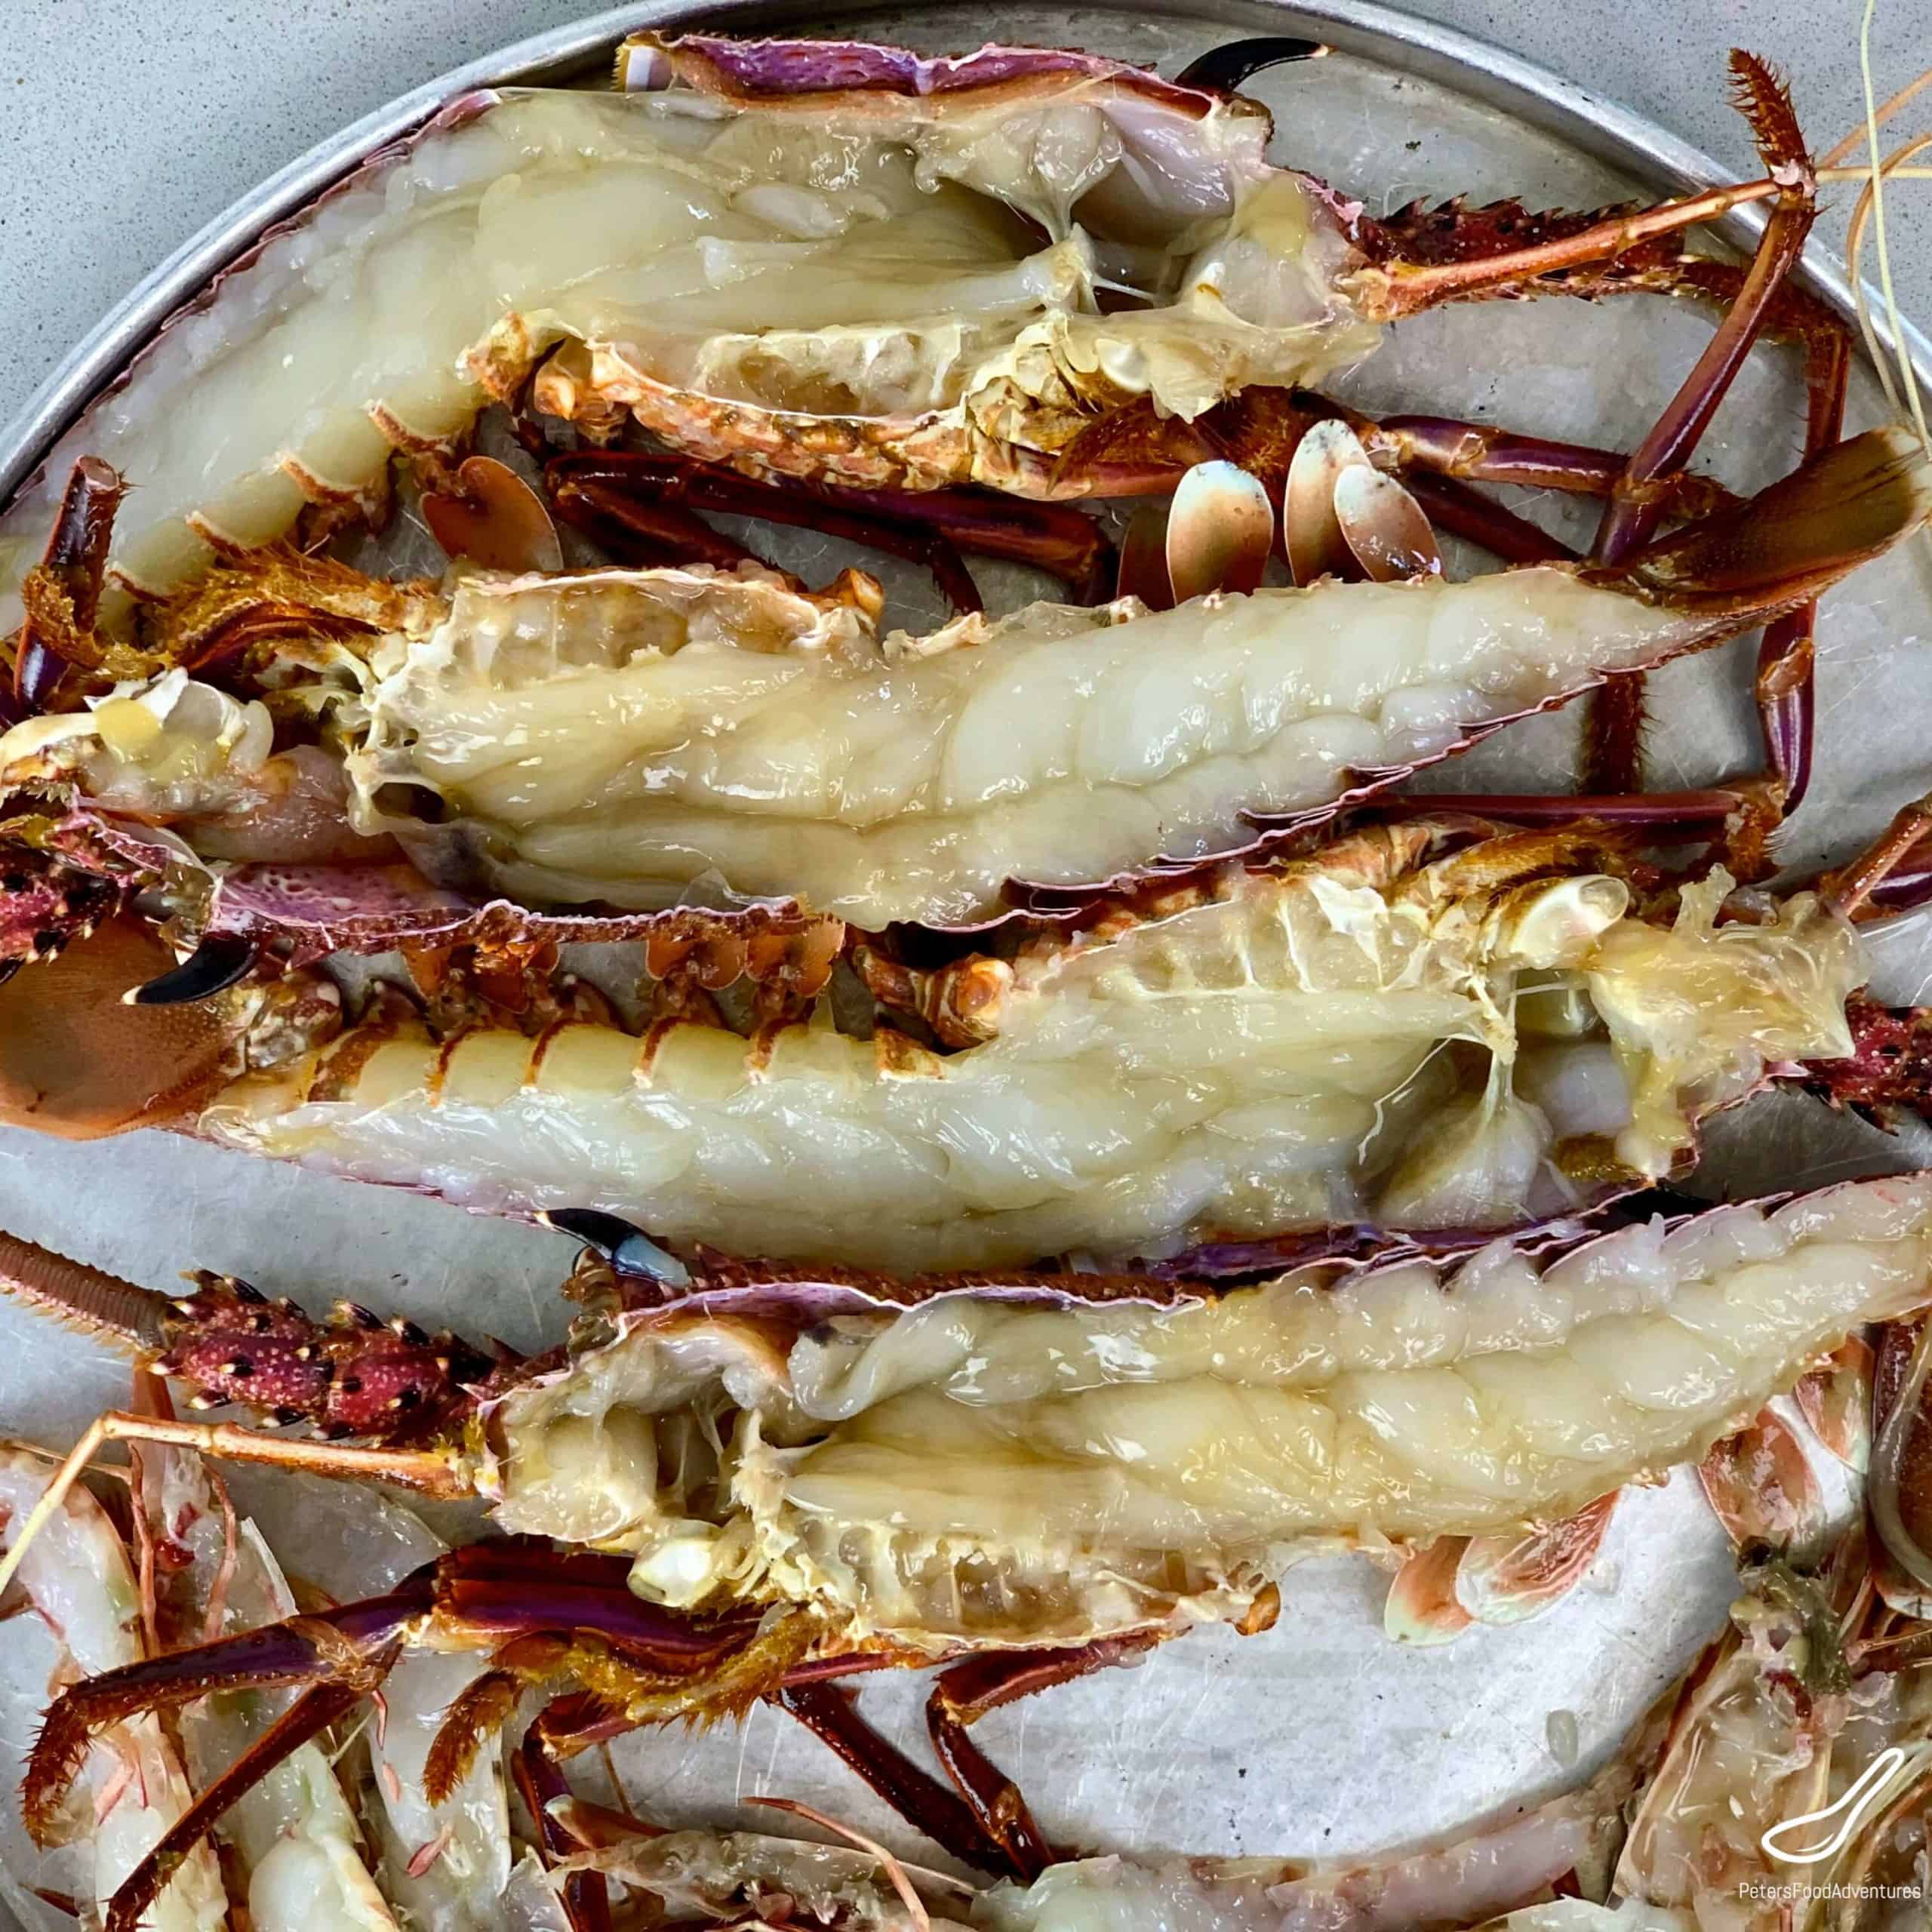 Rock lobsters sliced in half lengthways